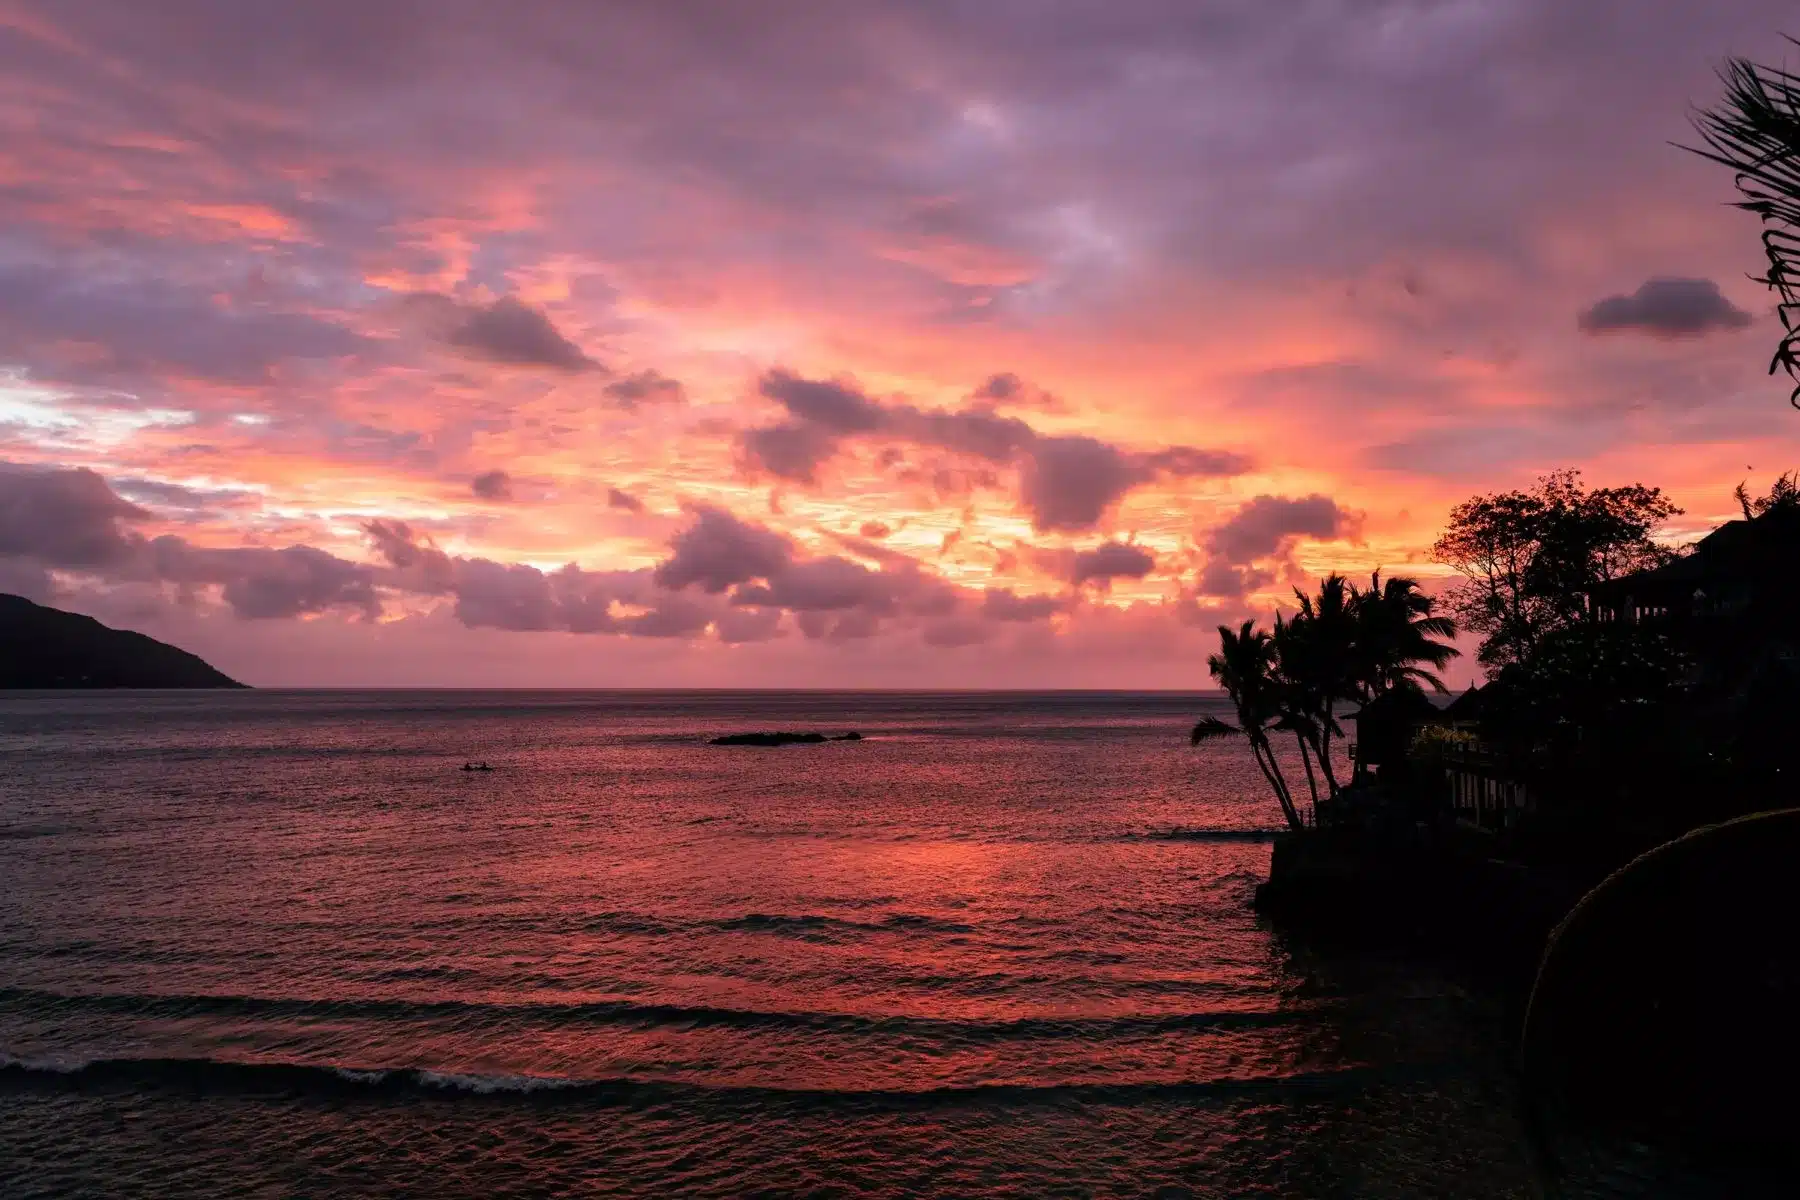 Ein leuchtender Sonnenuntergang mit tiefen Rosa- und Orangetönen, die sich im Meer spiegeln, betrachtet von einer tropischen Küste mit Palmen- und Hügelsilhouetten während eines Segeltörns.